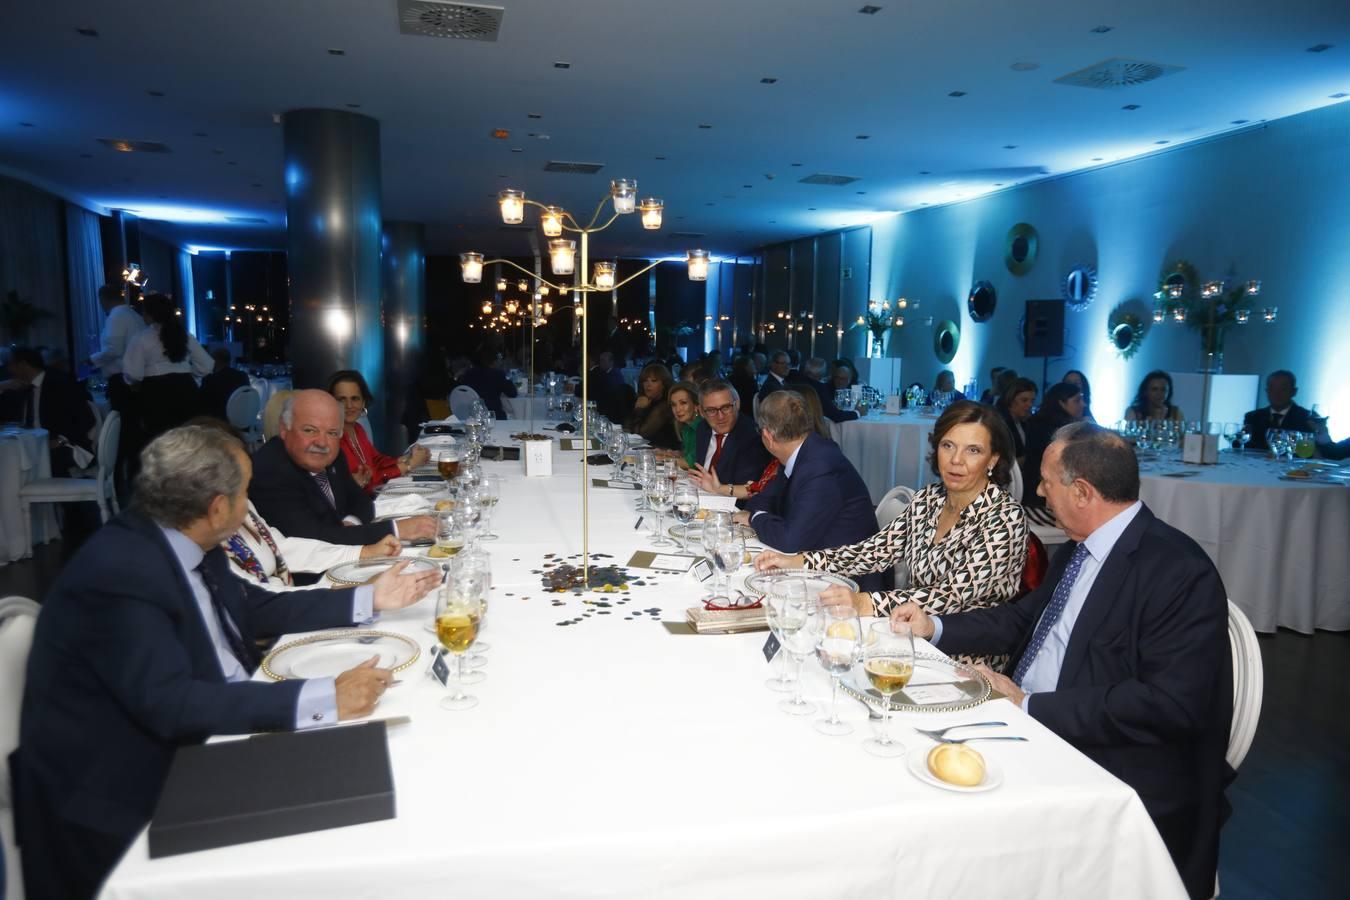 La cena de la Asociación contra el Cáncer en Córdoba, en imágenes